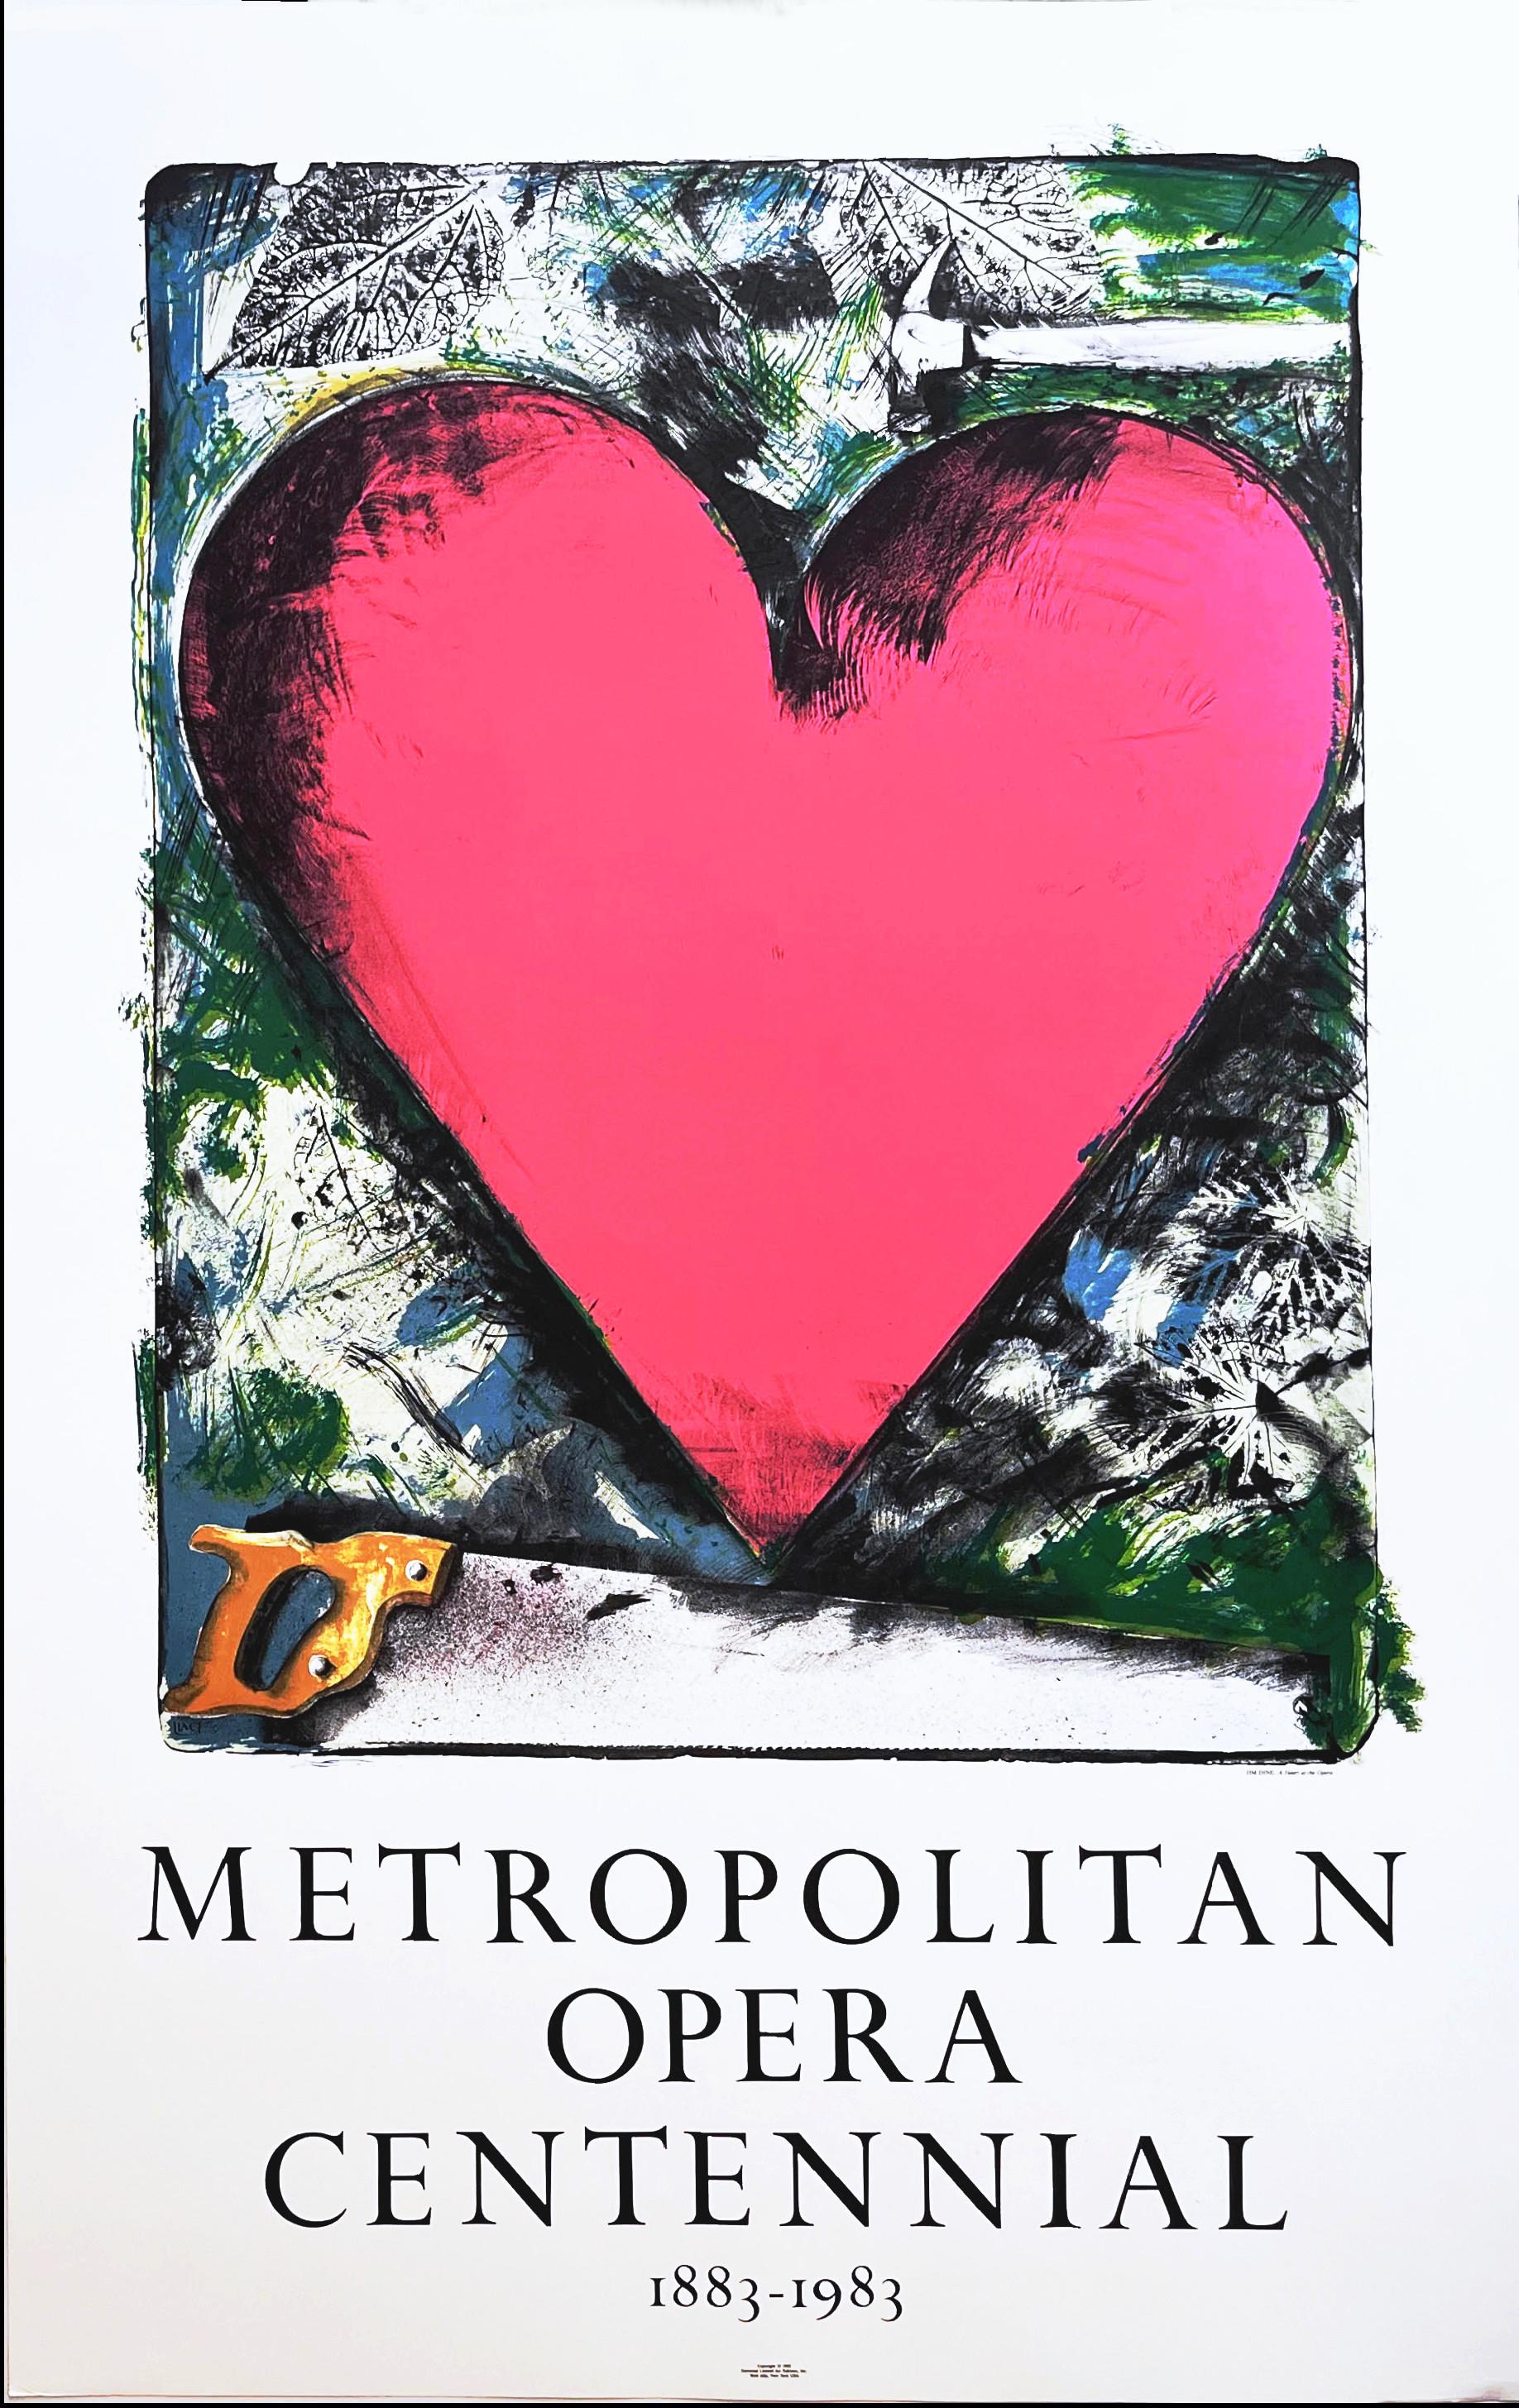 Pink Heart: Metropolitan Opera Centennial 1883-1983 lithographic Pop Art poster